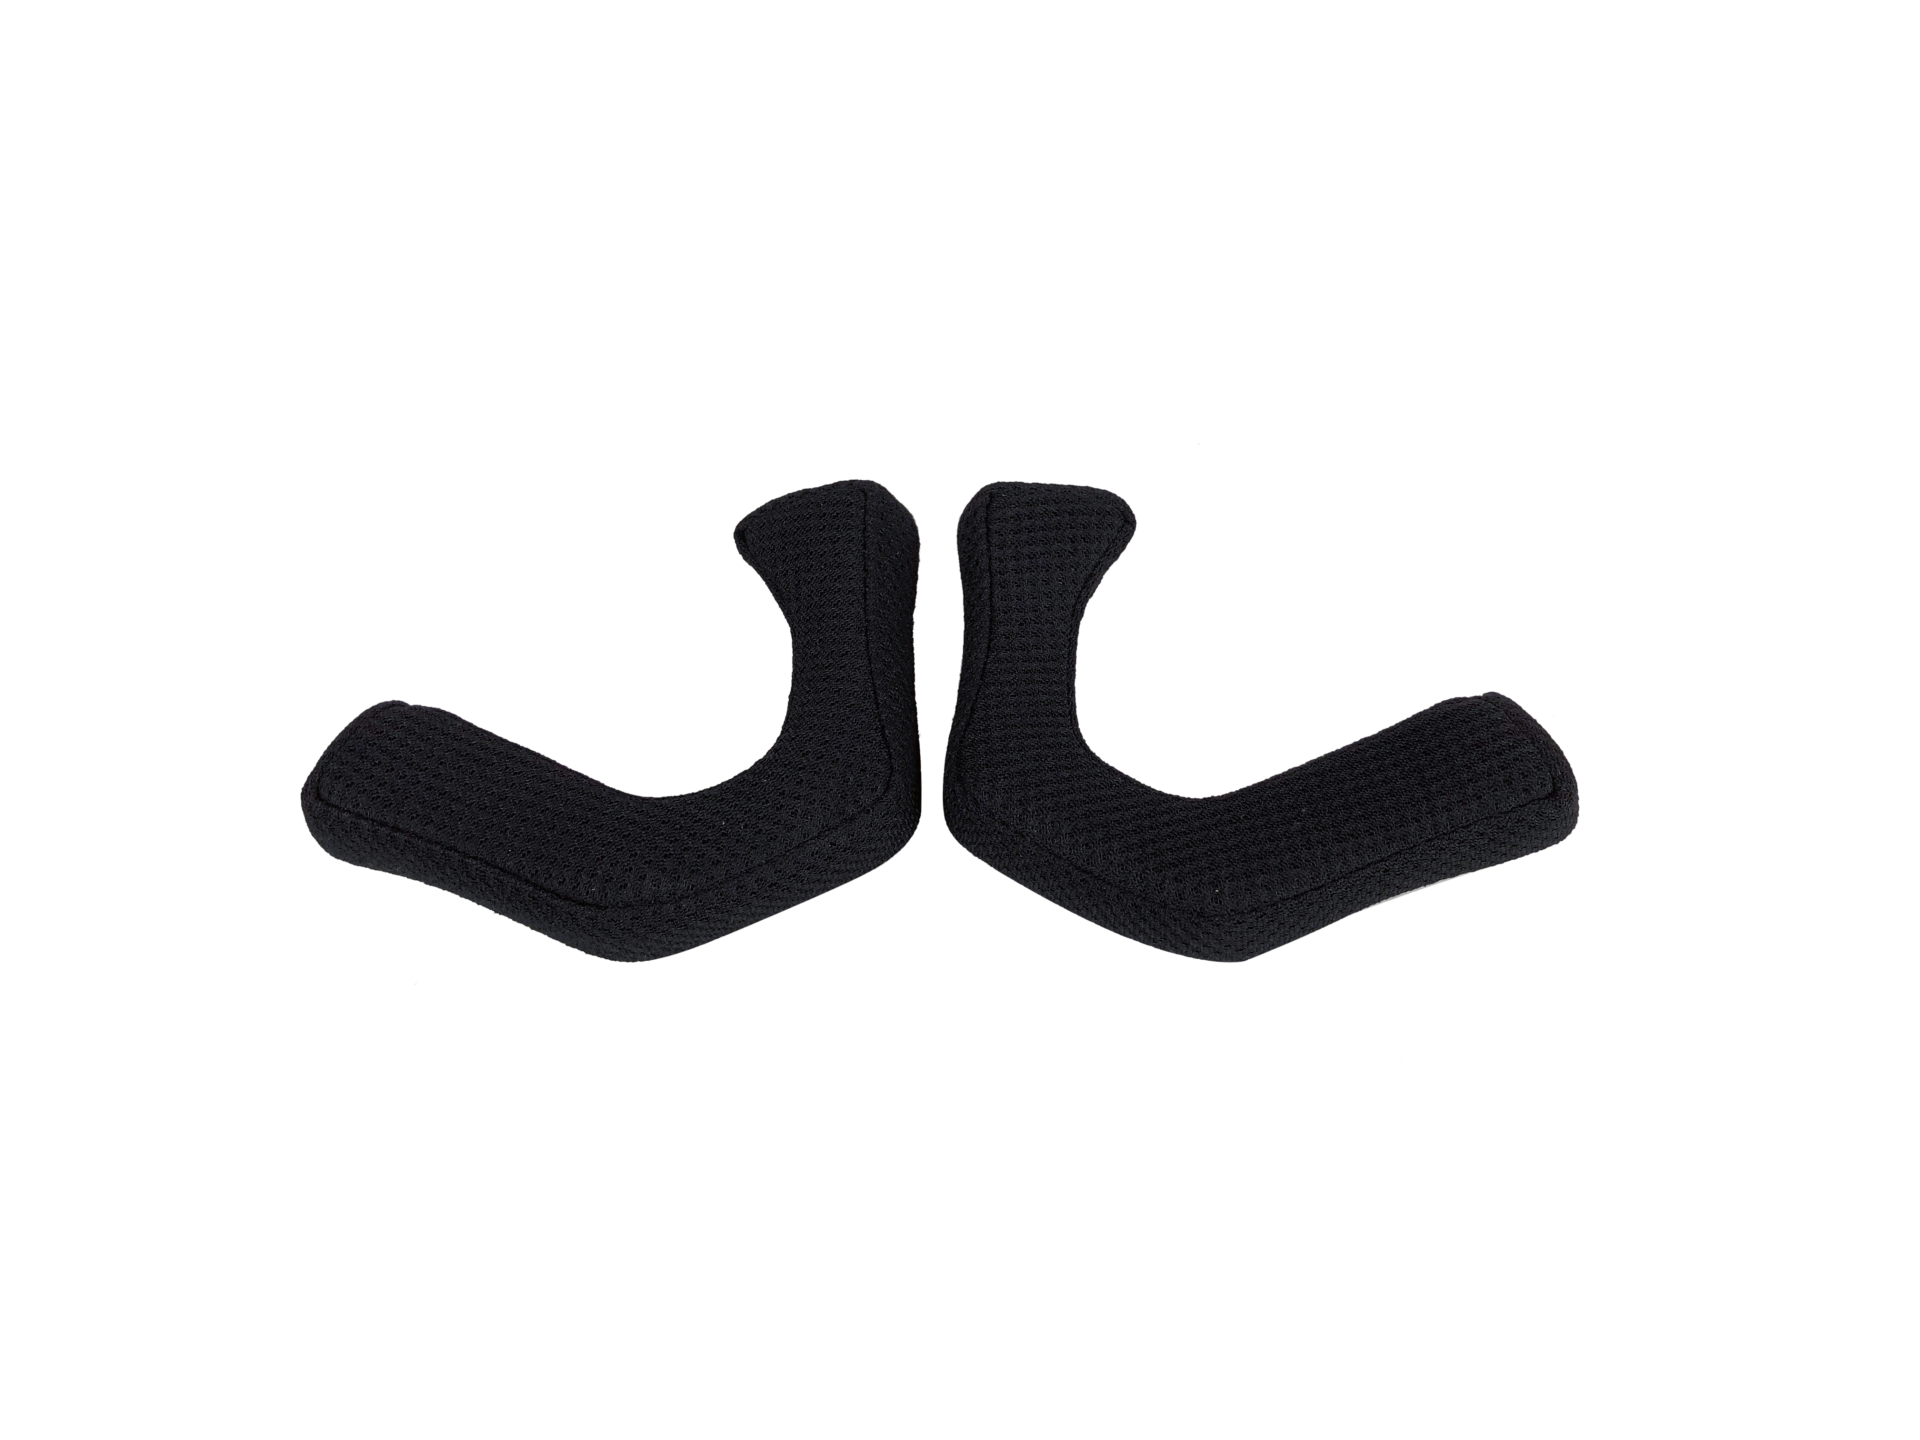 Voronoï ear foams - FreejumpSystem